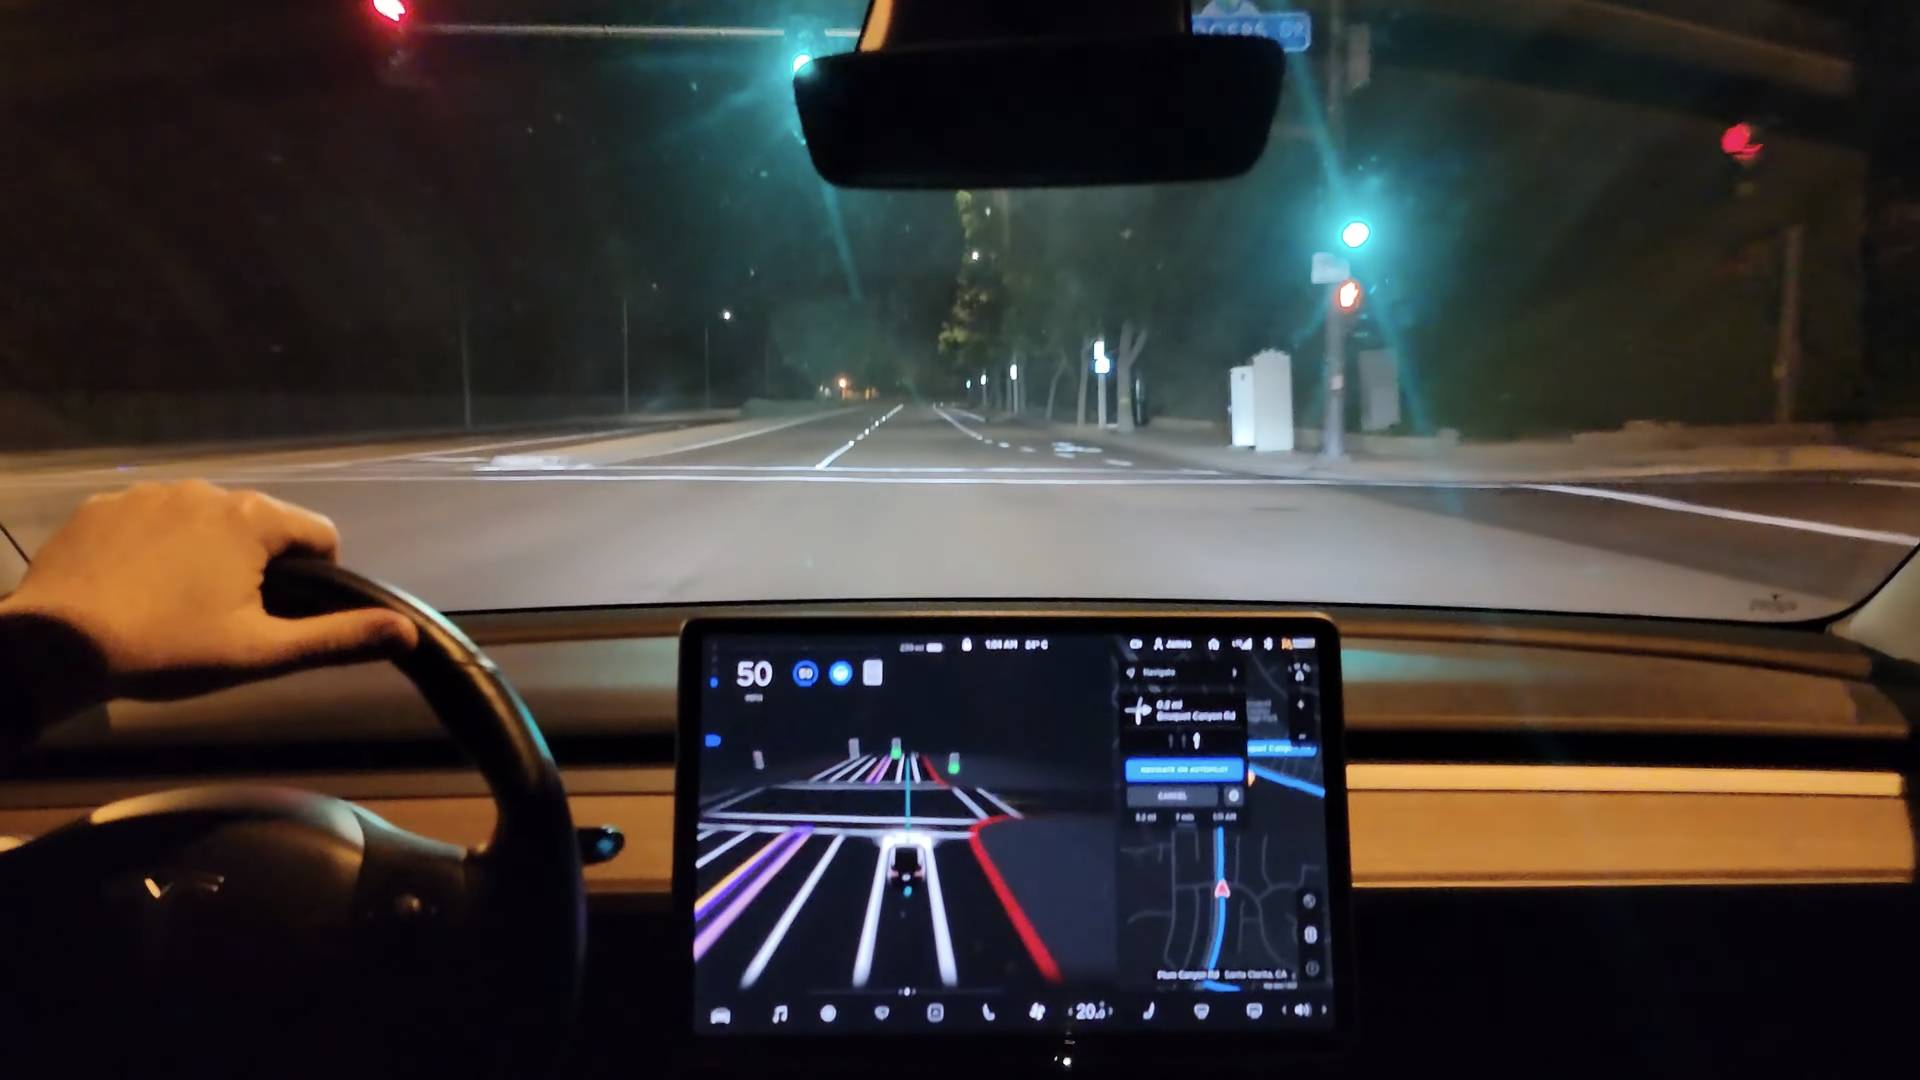 Dong Che Daily Tesla veröffentlicht das vollautomatisierte Fahrsystem Beta 9.0 / Audis Projekt für autonomes Fahren wird 2025 in Serie gehen / Xiaomi beschleunigt den Prozess der Autoherstellung - Tesla1